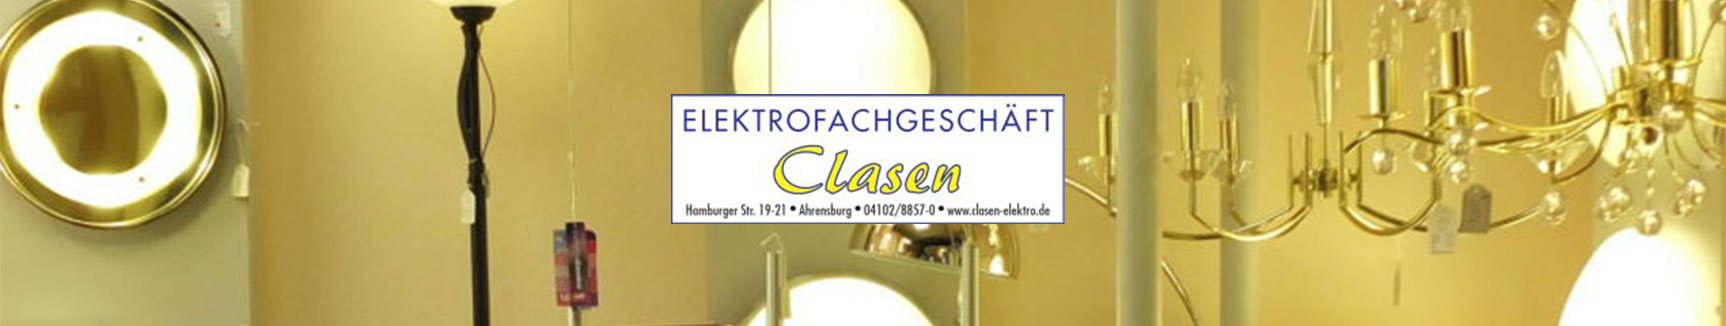 Elektrofachgeschäft Clasen - Ihr kompetentes Elektrofachgeschäft in Ahrensburg